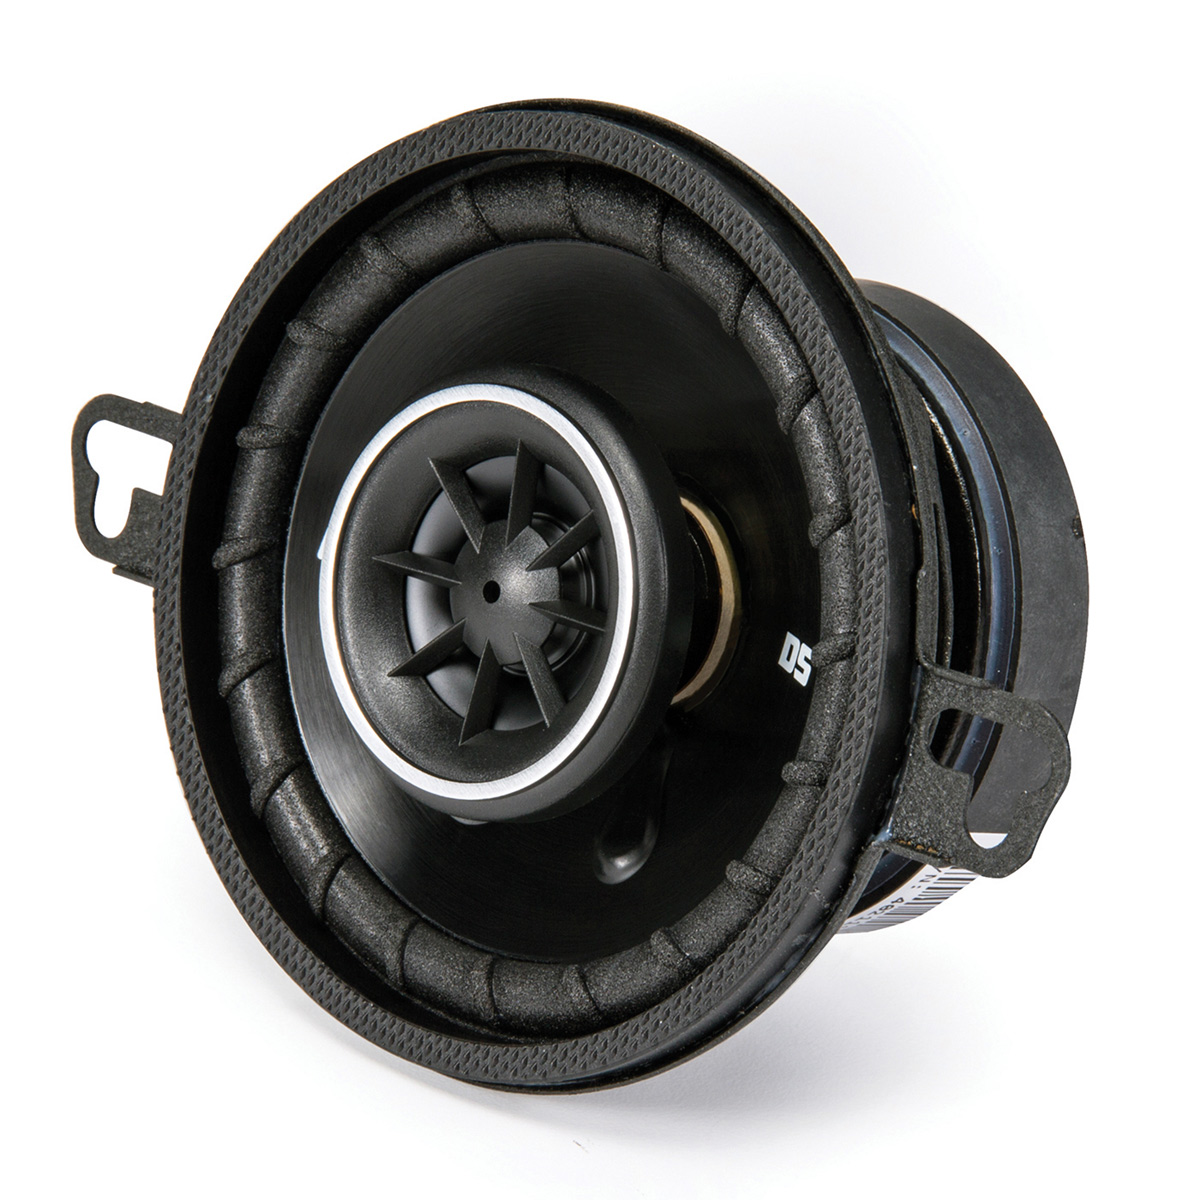 Kicker 3.5" 80 Watt 2-Way Car Audio Speakers DSC35 DS35 Coax, Set of 2 - image 5 of 8